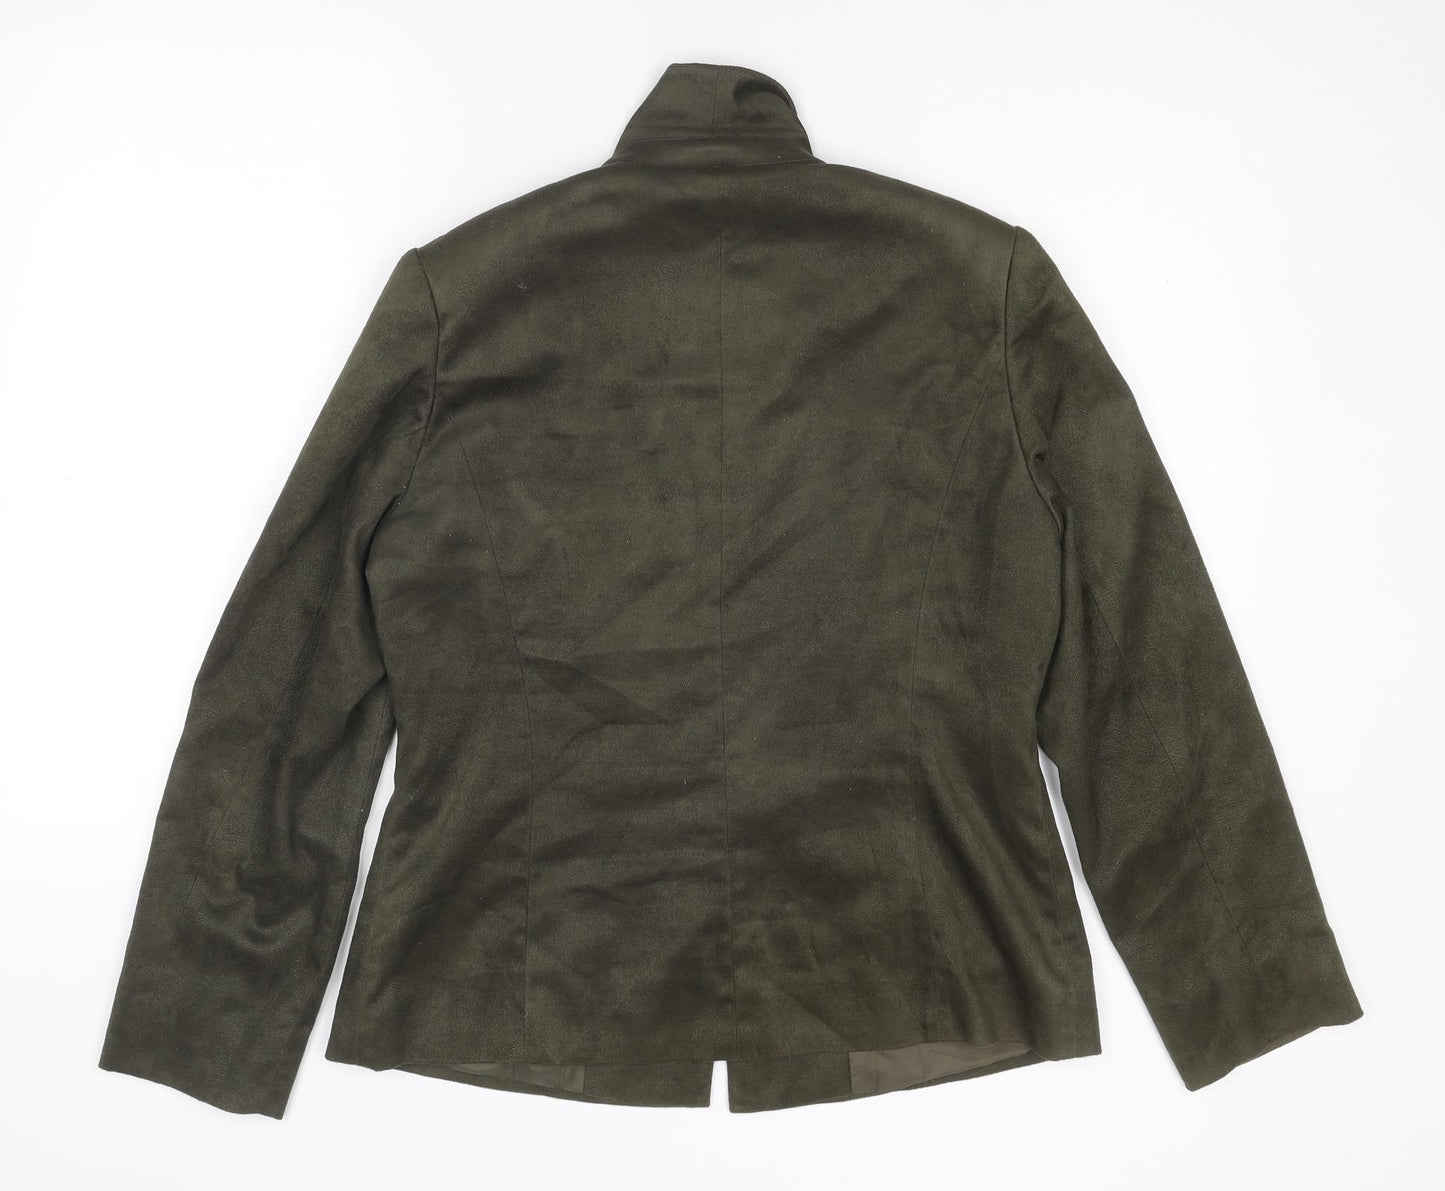 Jacques Vert Womens Green Jacket Blazer Size 12 Button